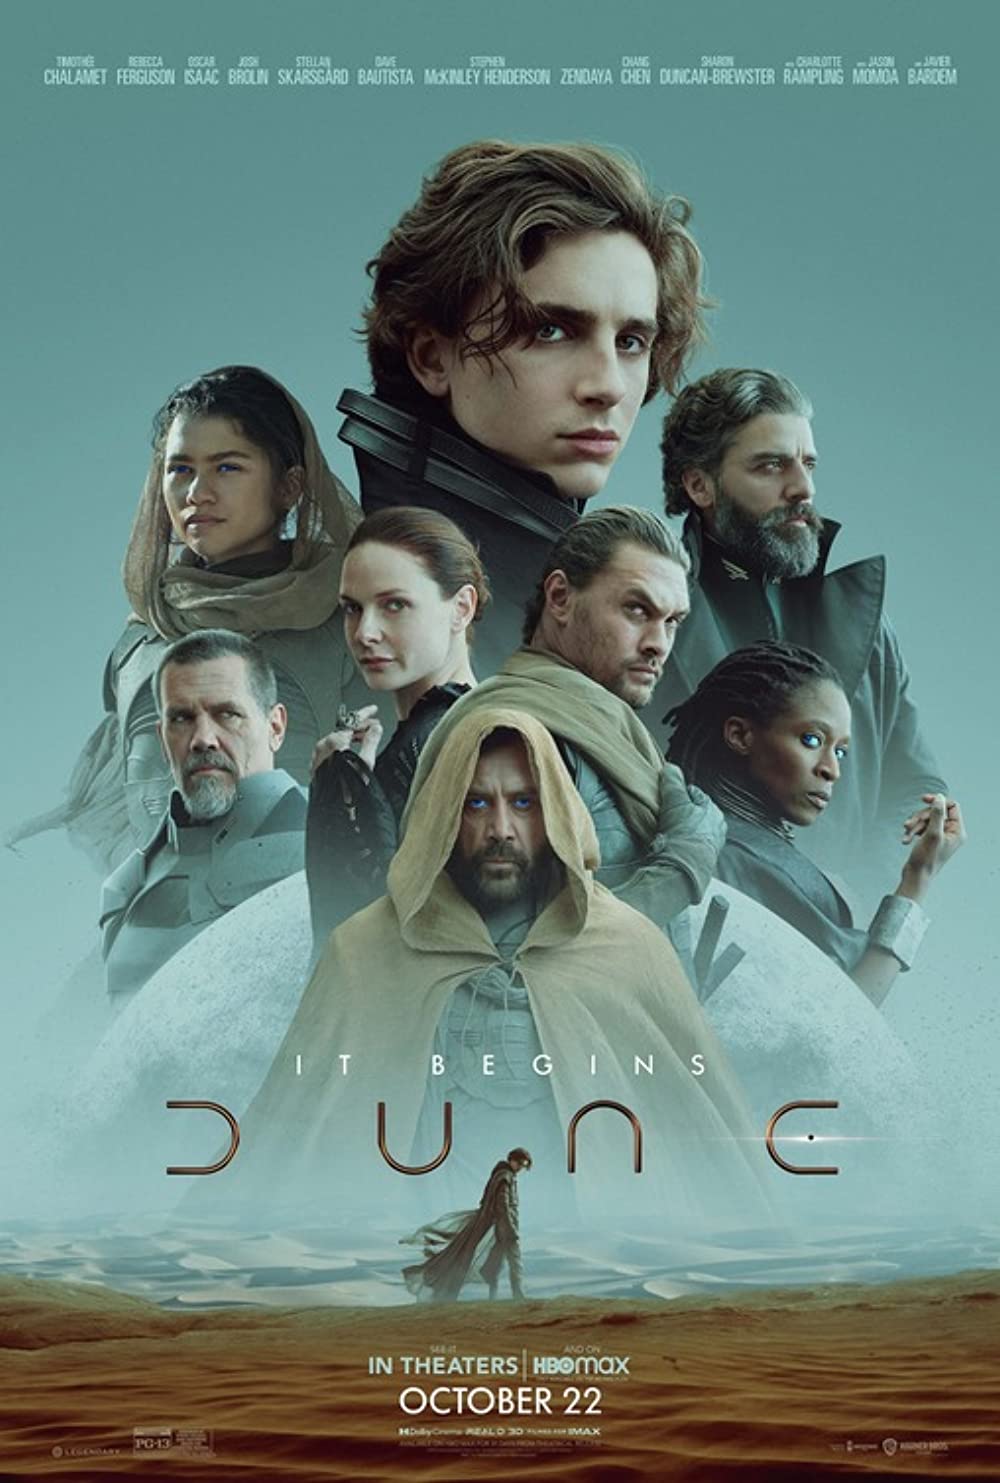 Cover Art for "Dune"